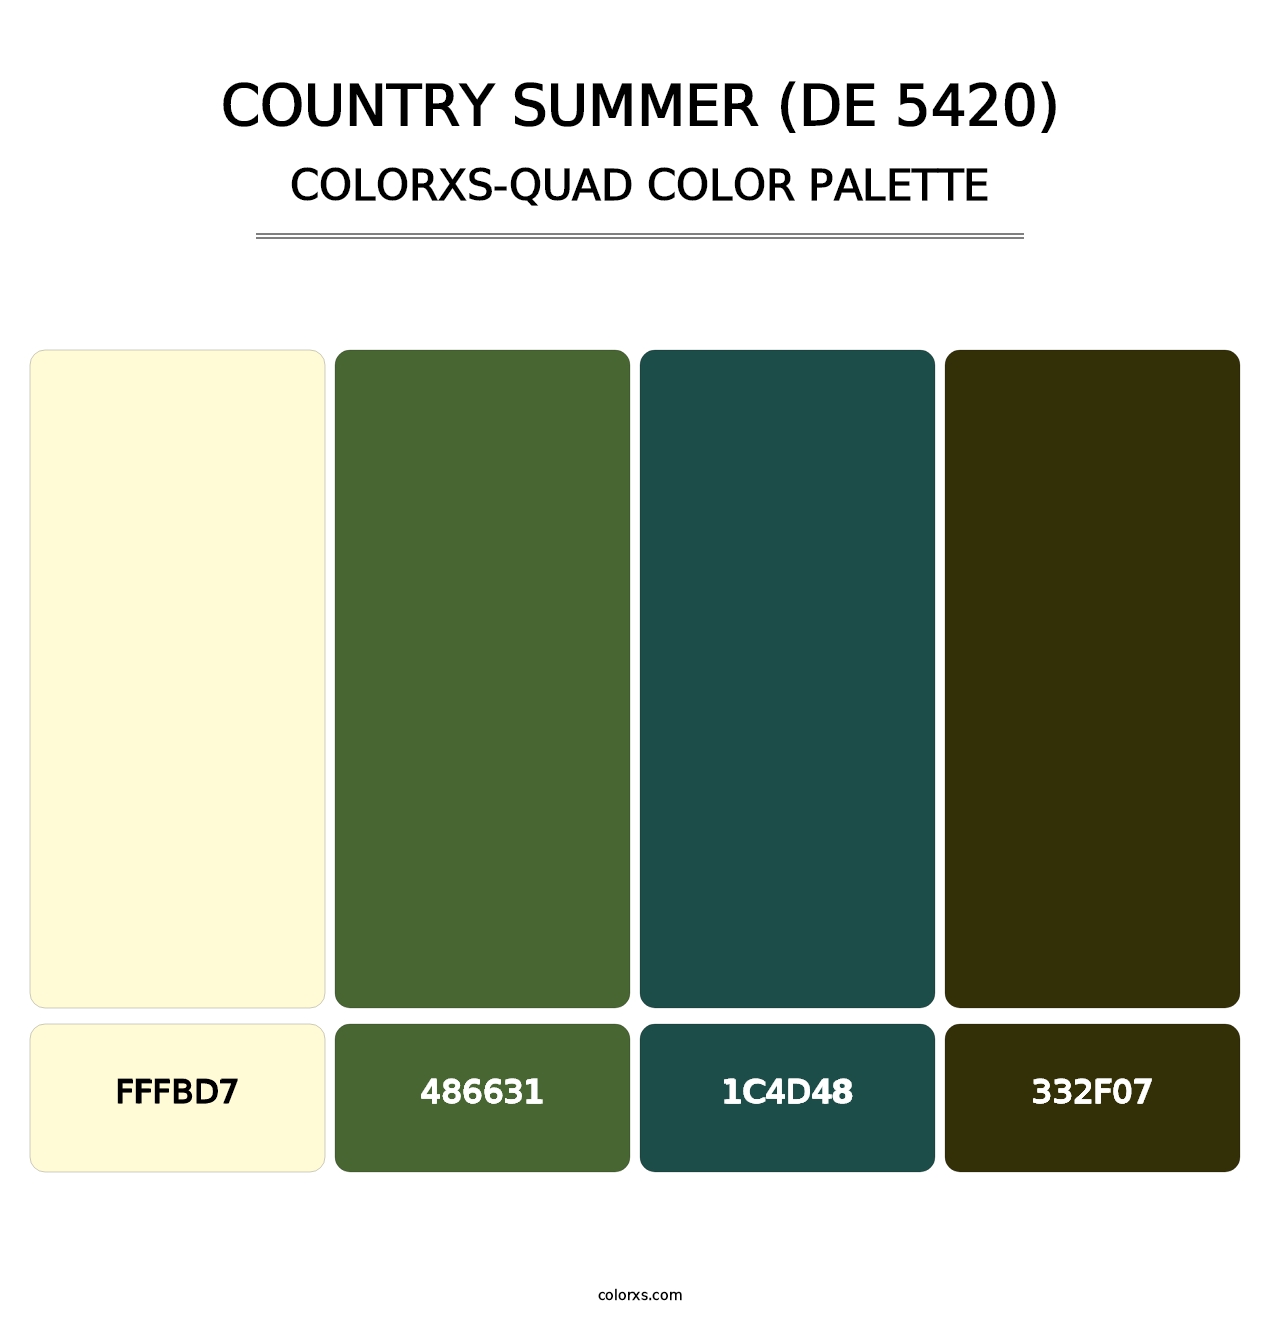 Country Summer (DE 5420) - Colorxs Quad Palette